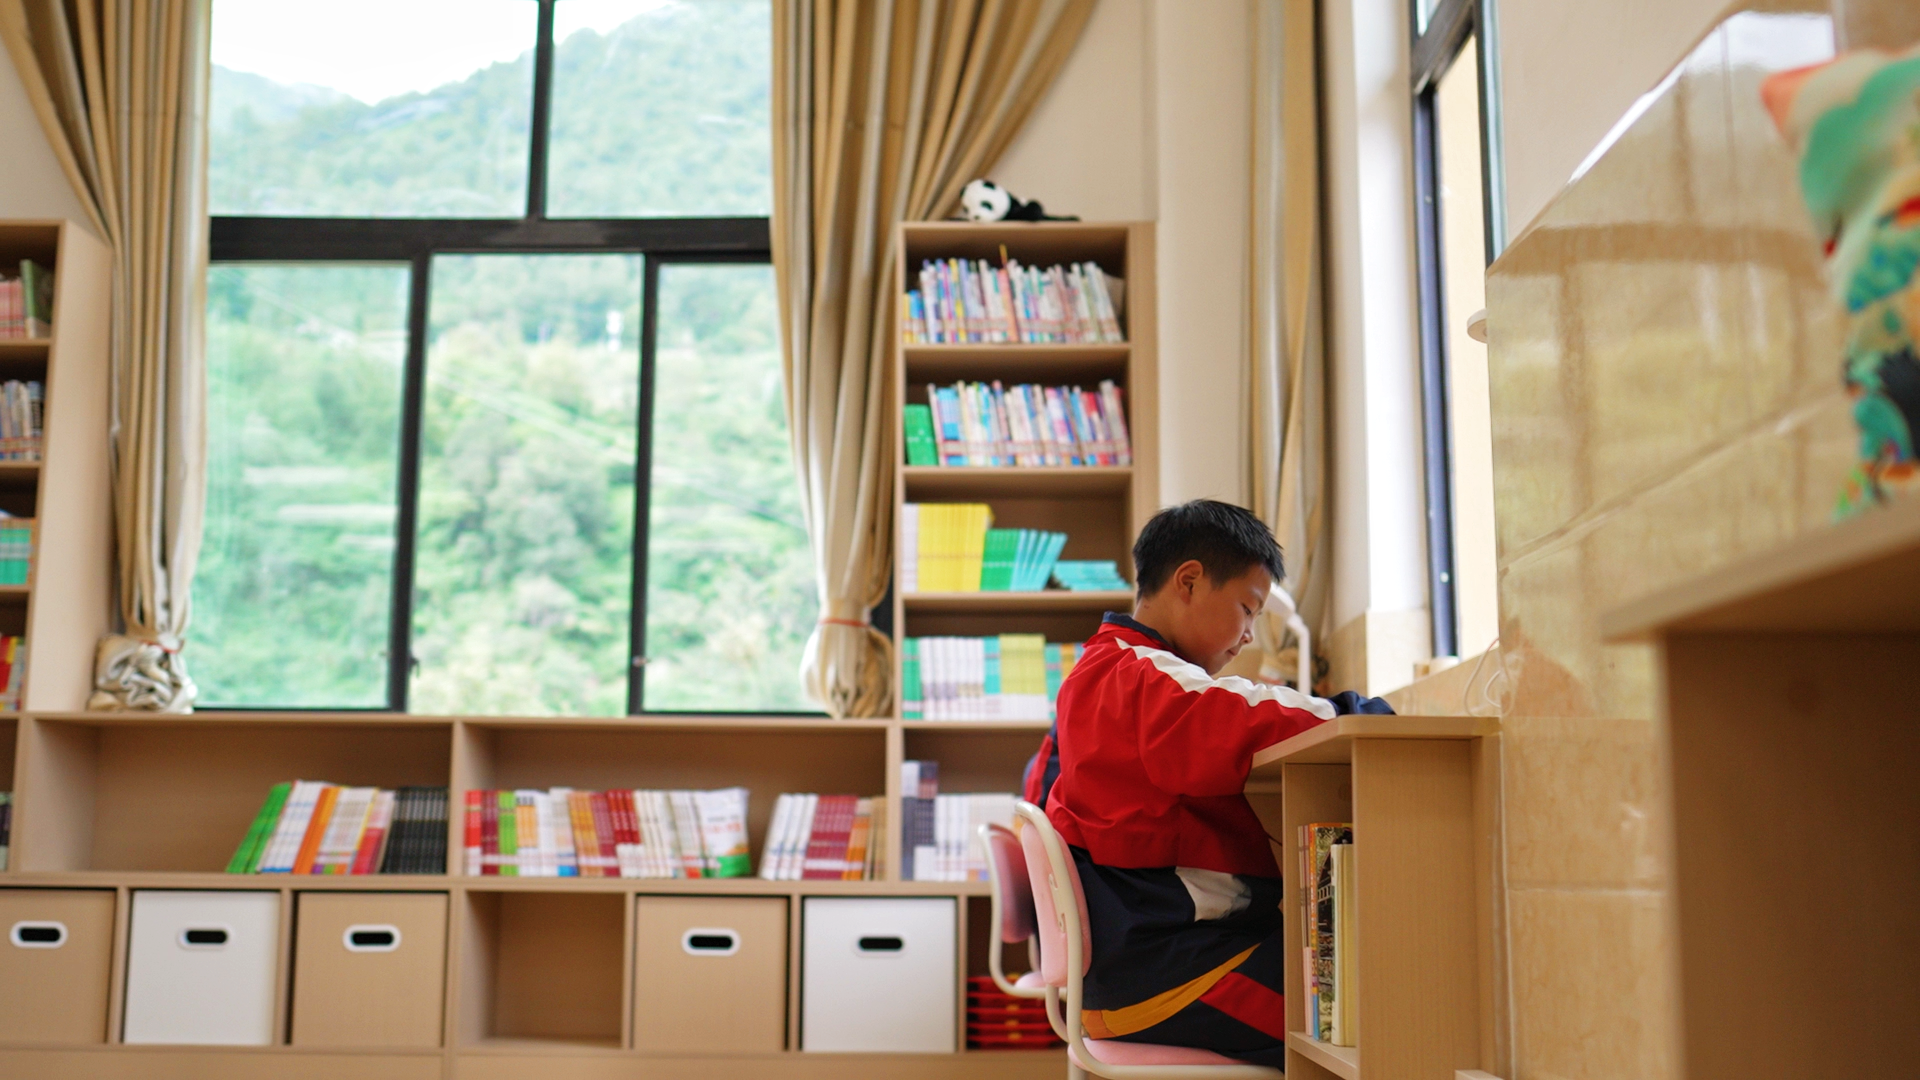 2、孩子们在“拔萃爱心书屋”内阅读书籍。.png